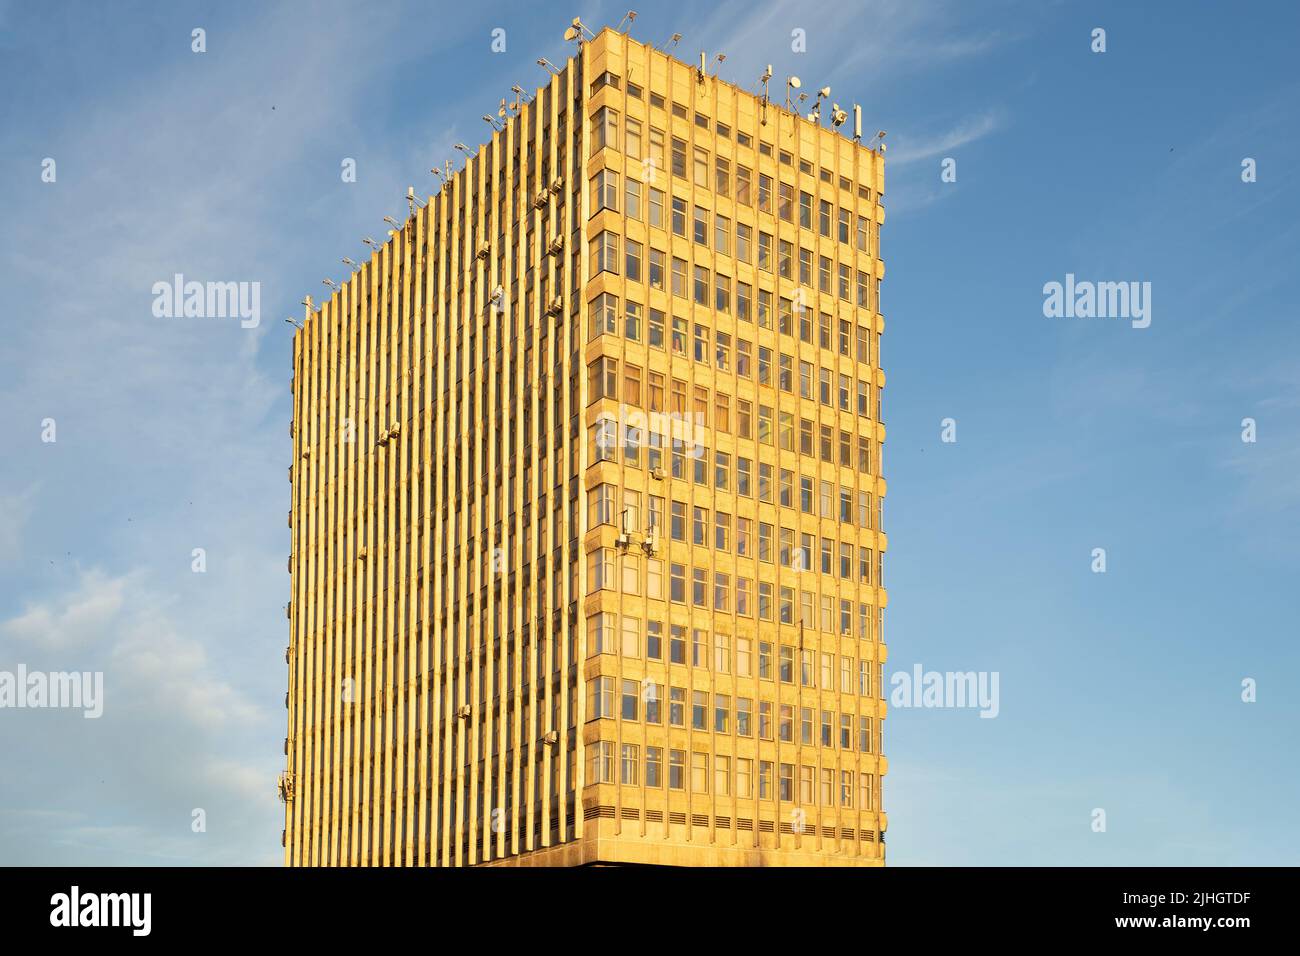 Architecture soviétique. Façade du bâtiment de l'époque soviétique. Le bâtiment est dans le style du modernisme soviétique des 70s - 80s Banque D'Images